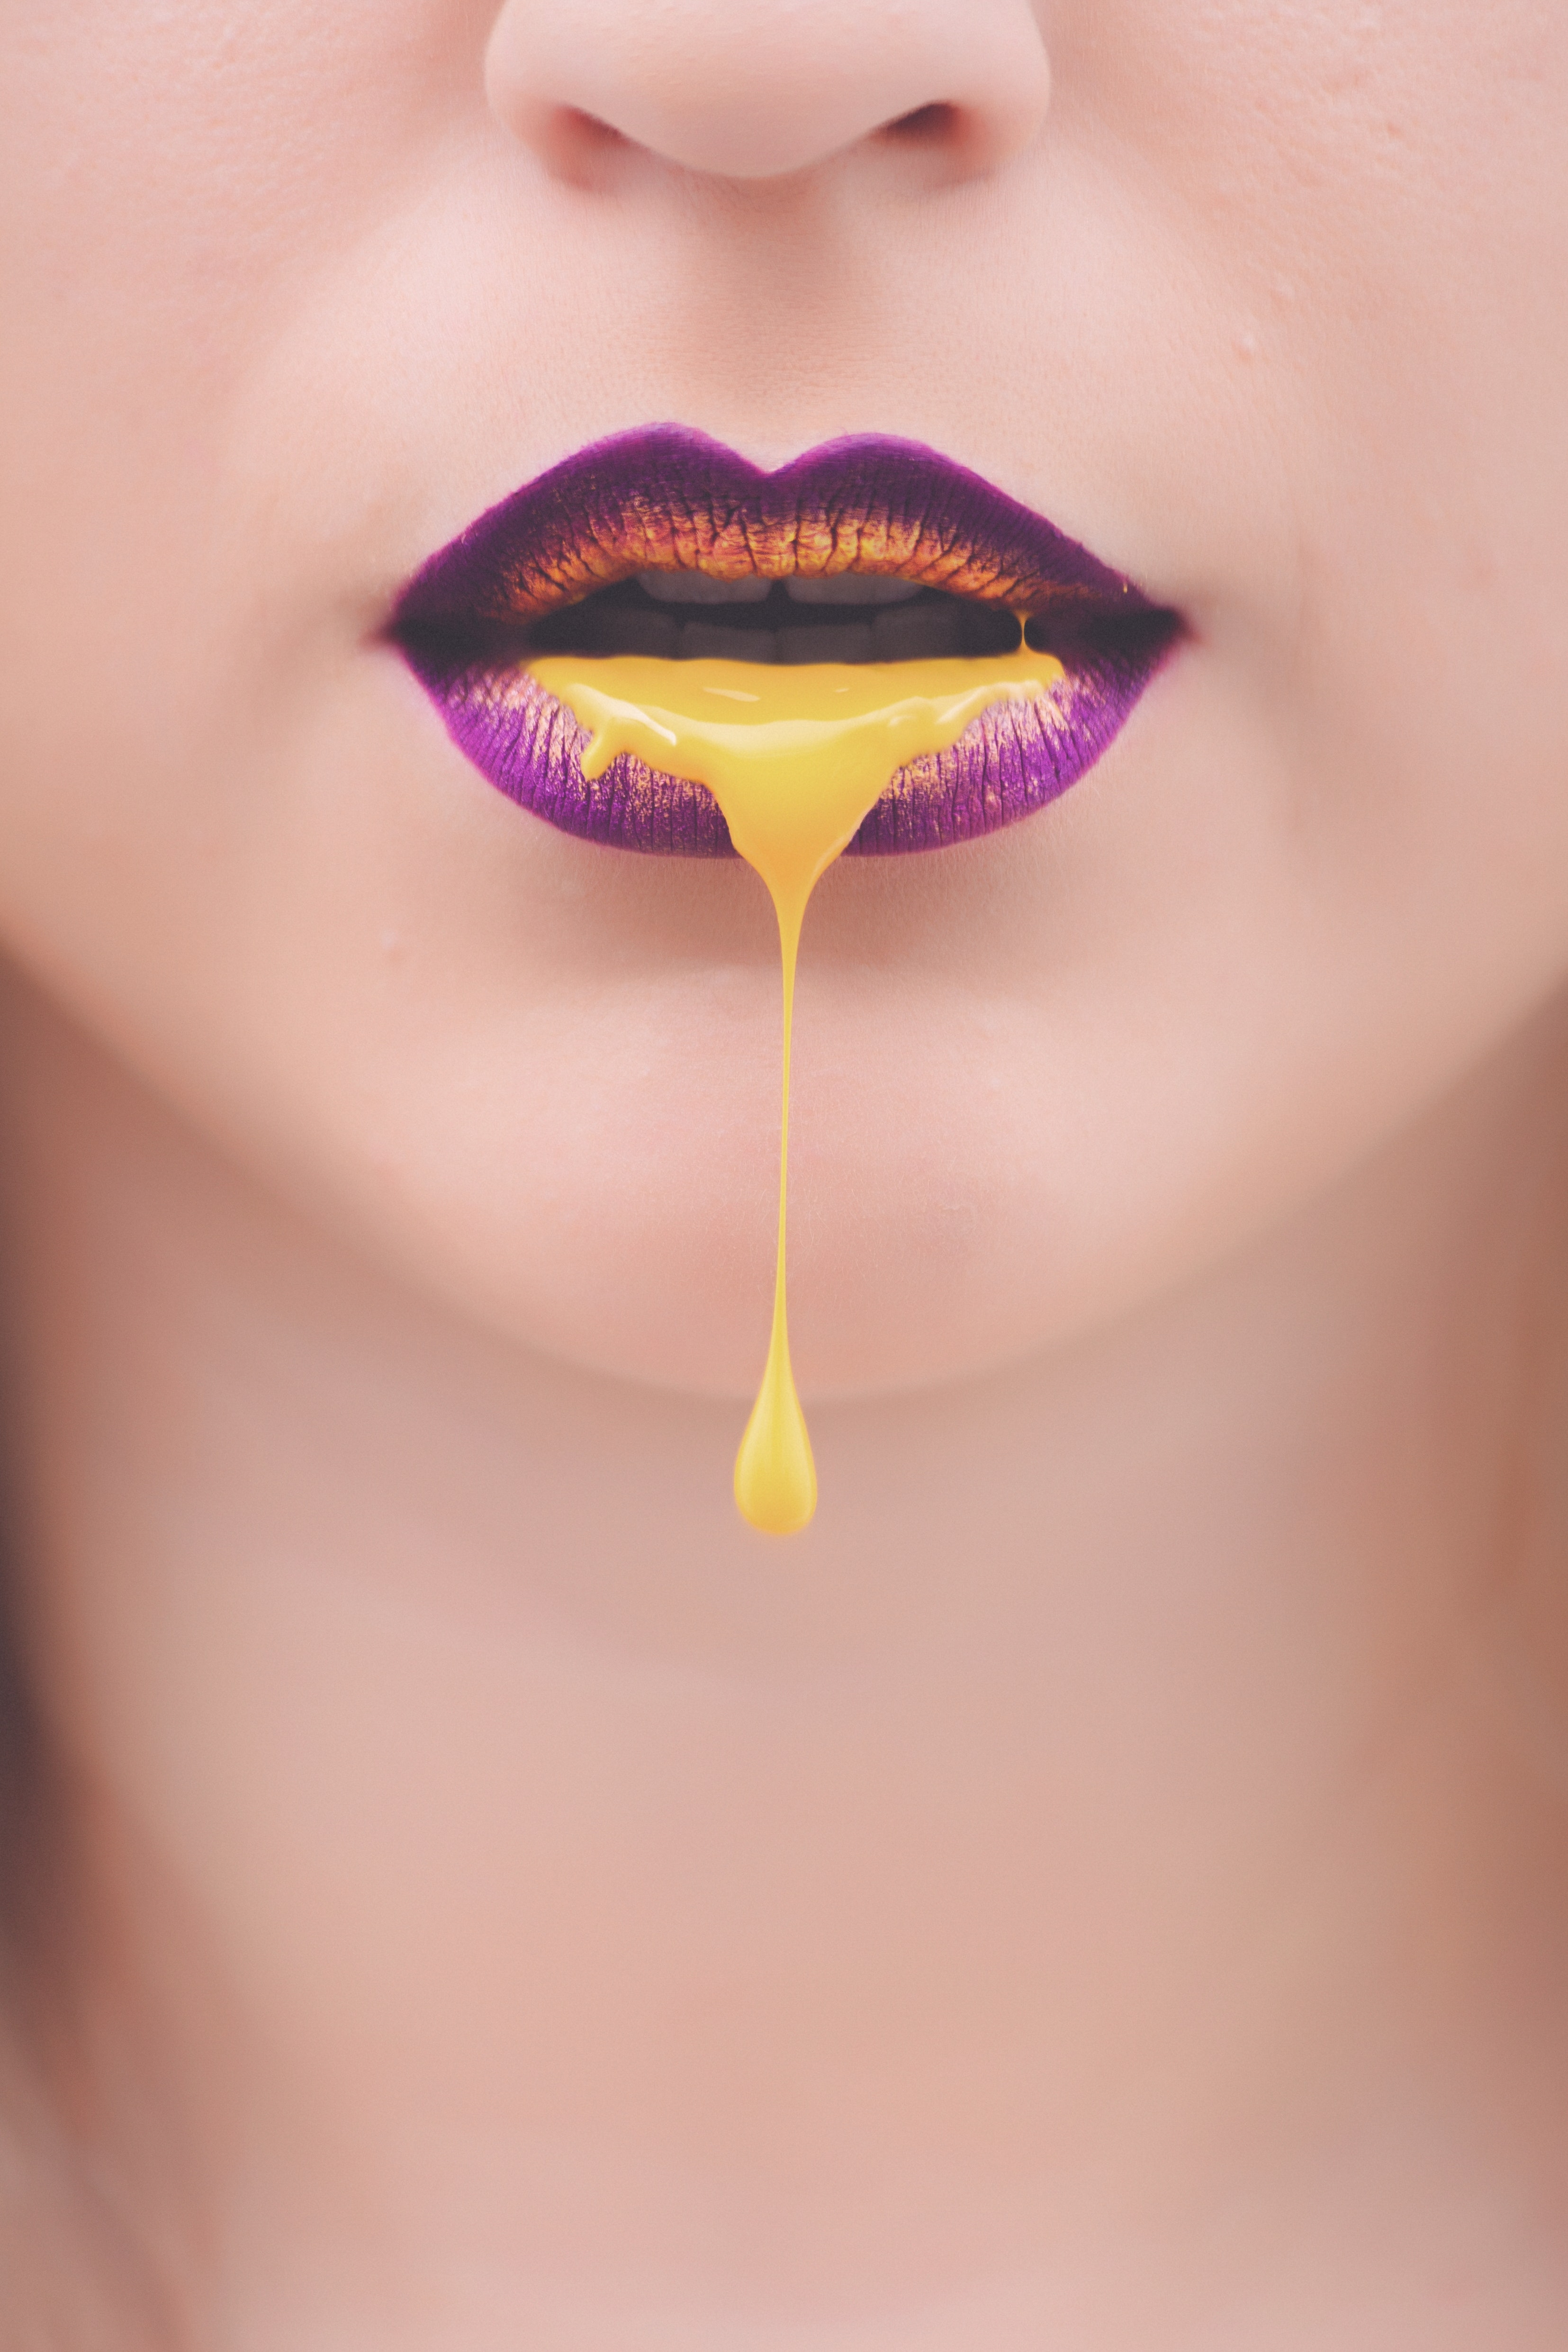 women-s-purple-and-yellow-lips-with-yellow-liquid-922470.jpg